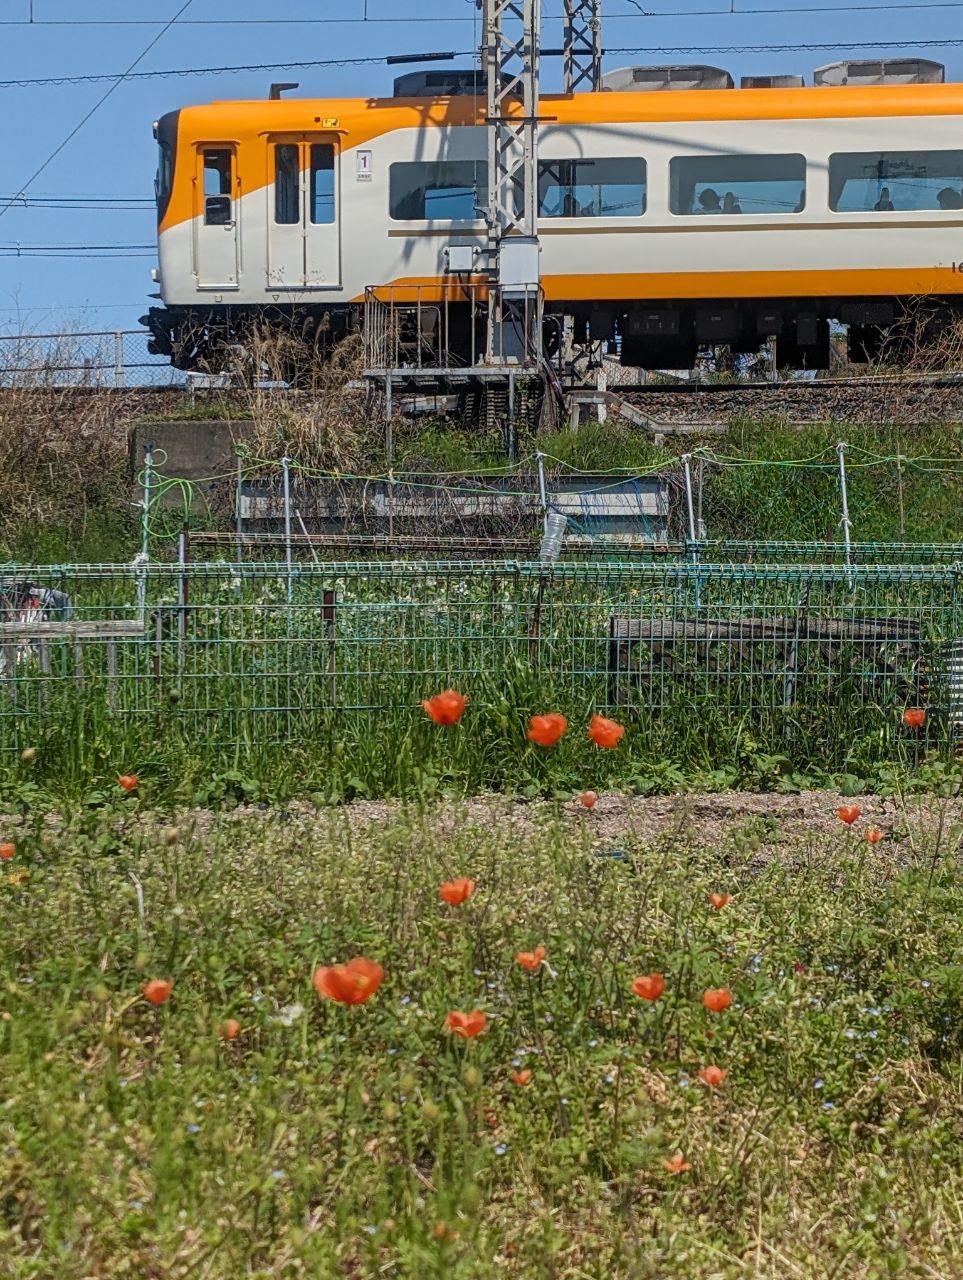 オレンジ色の近鉄電車とオレンジ色のポピーの写真